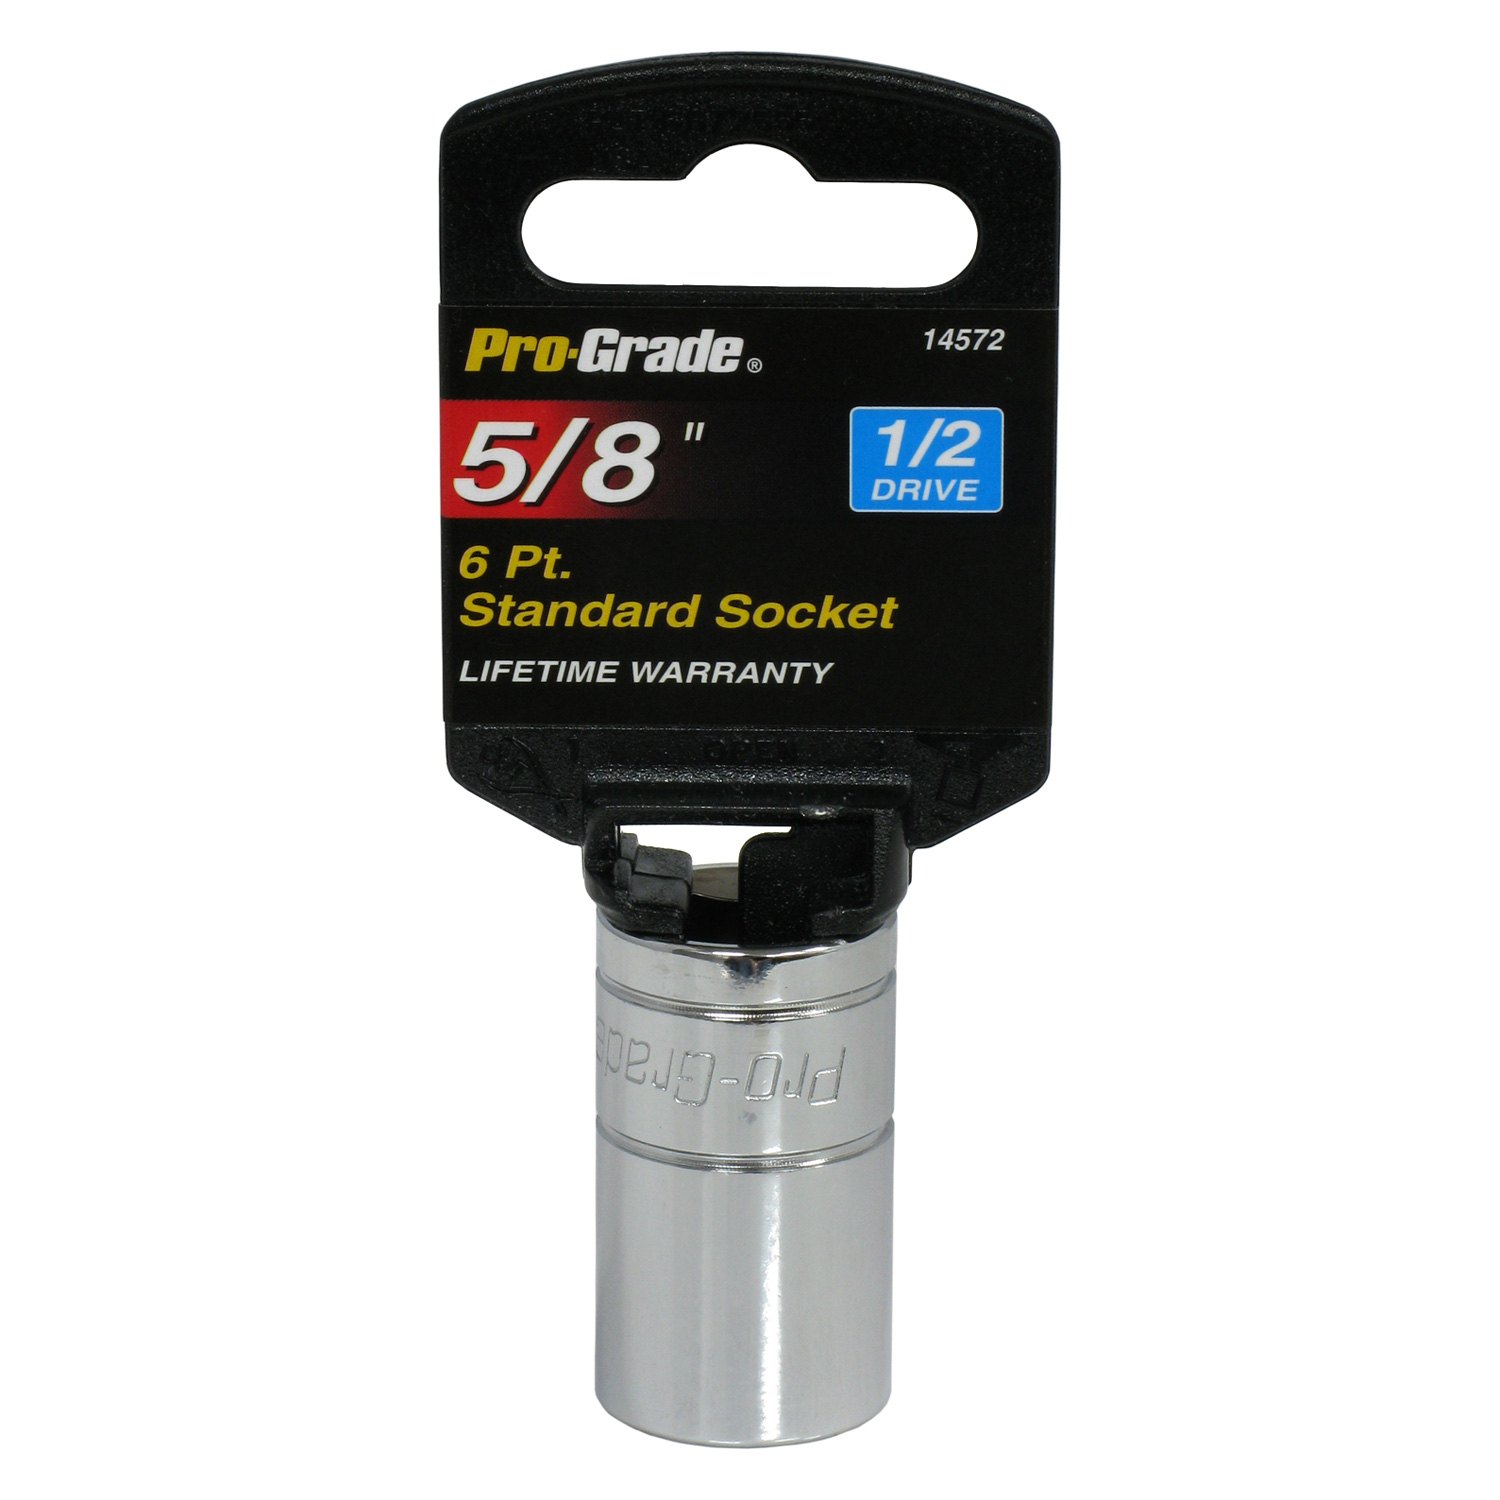 5/8 Socket 6 Pt Pro-Grade Tools 14572-1/2 Dr